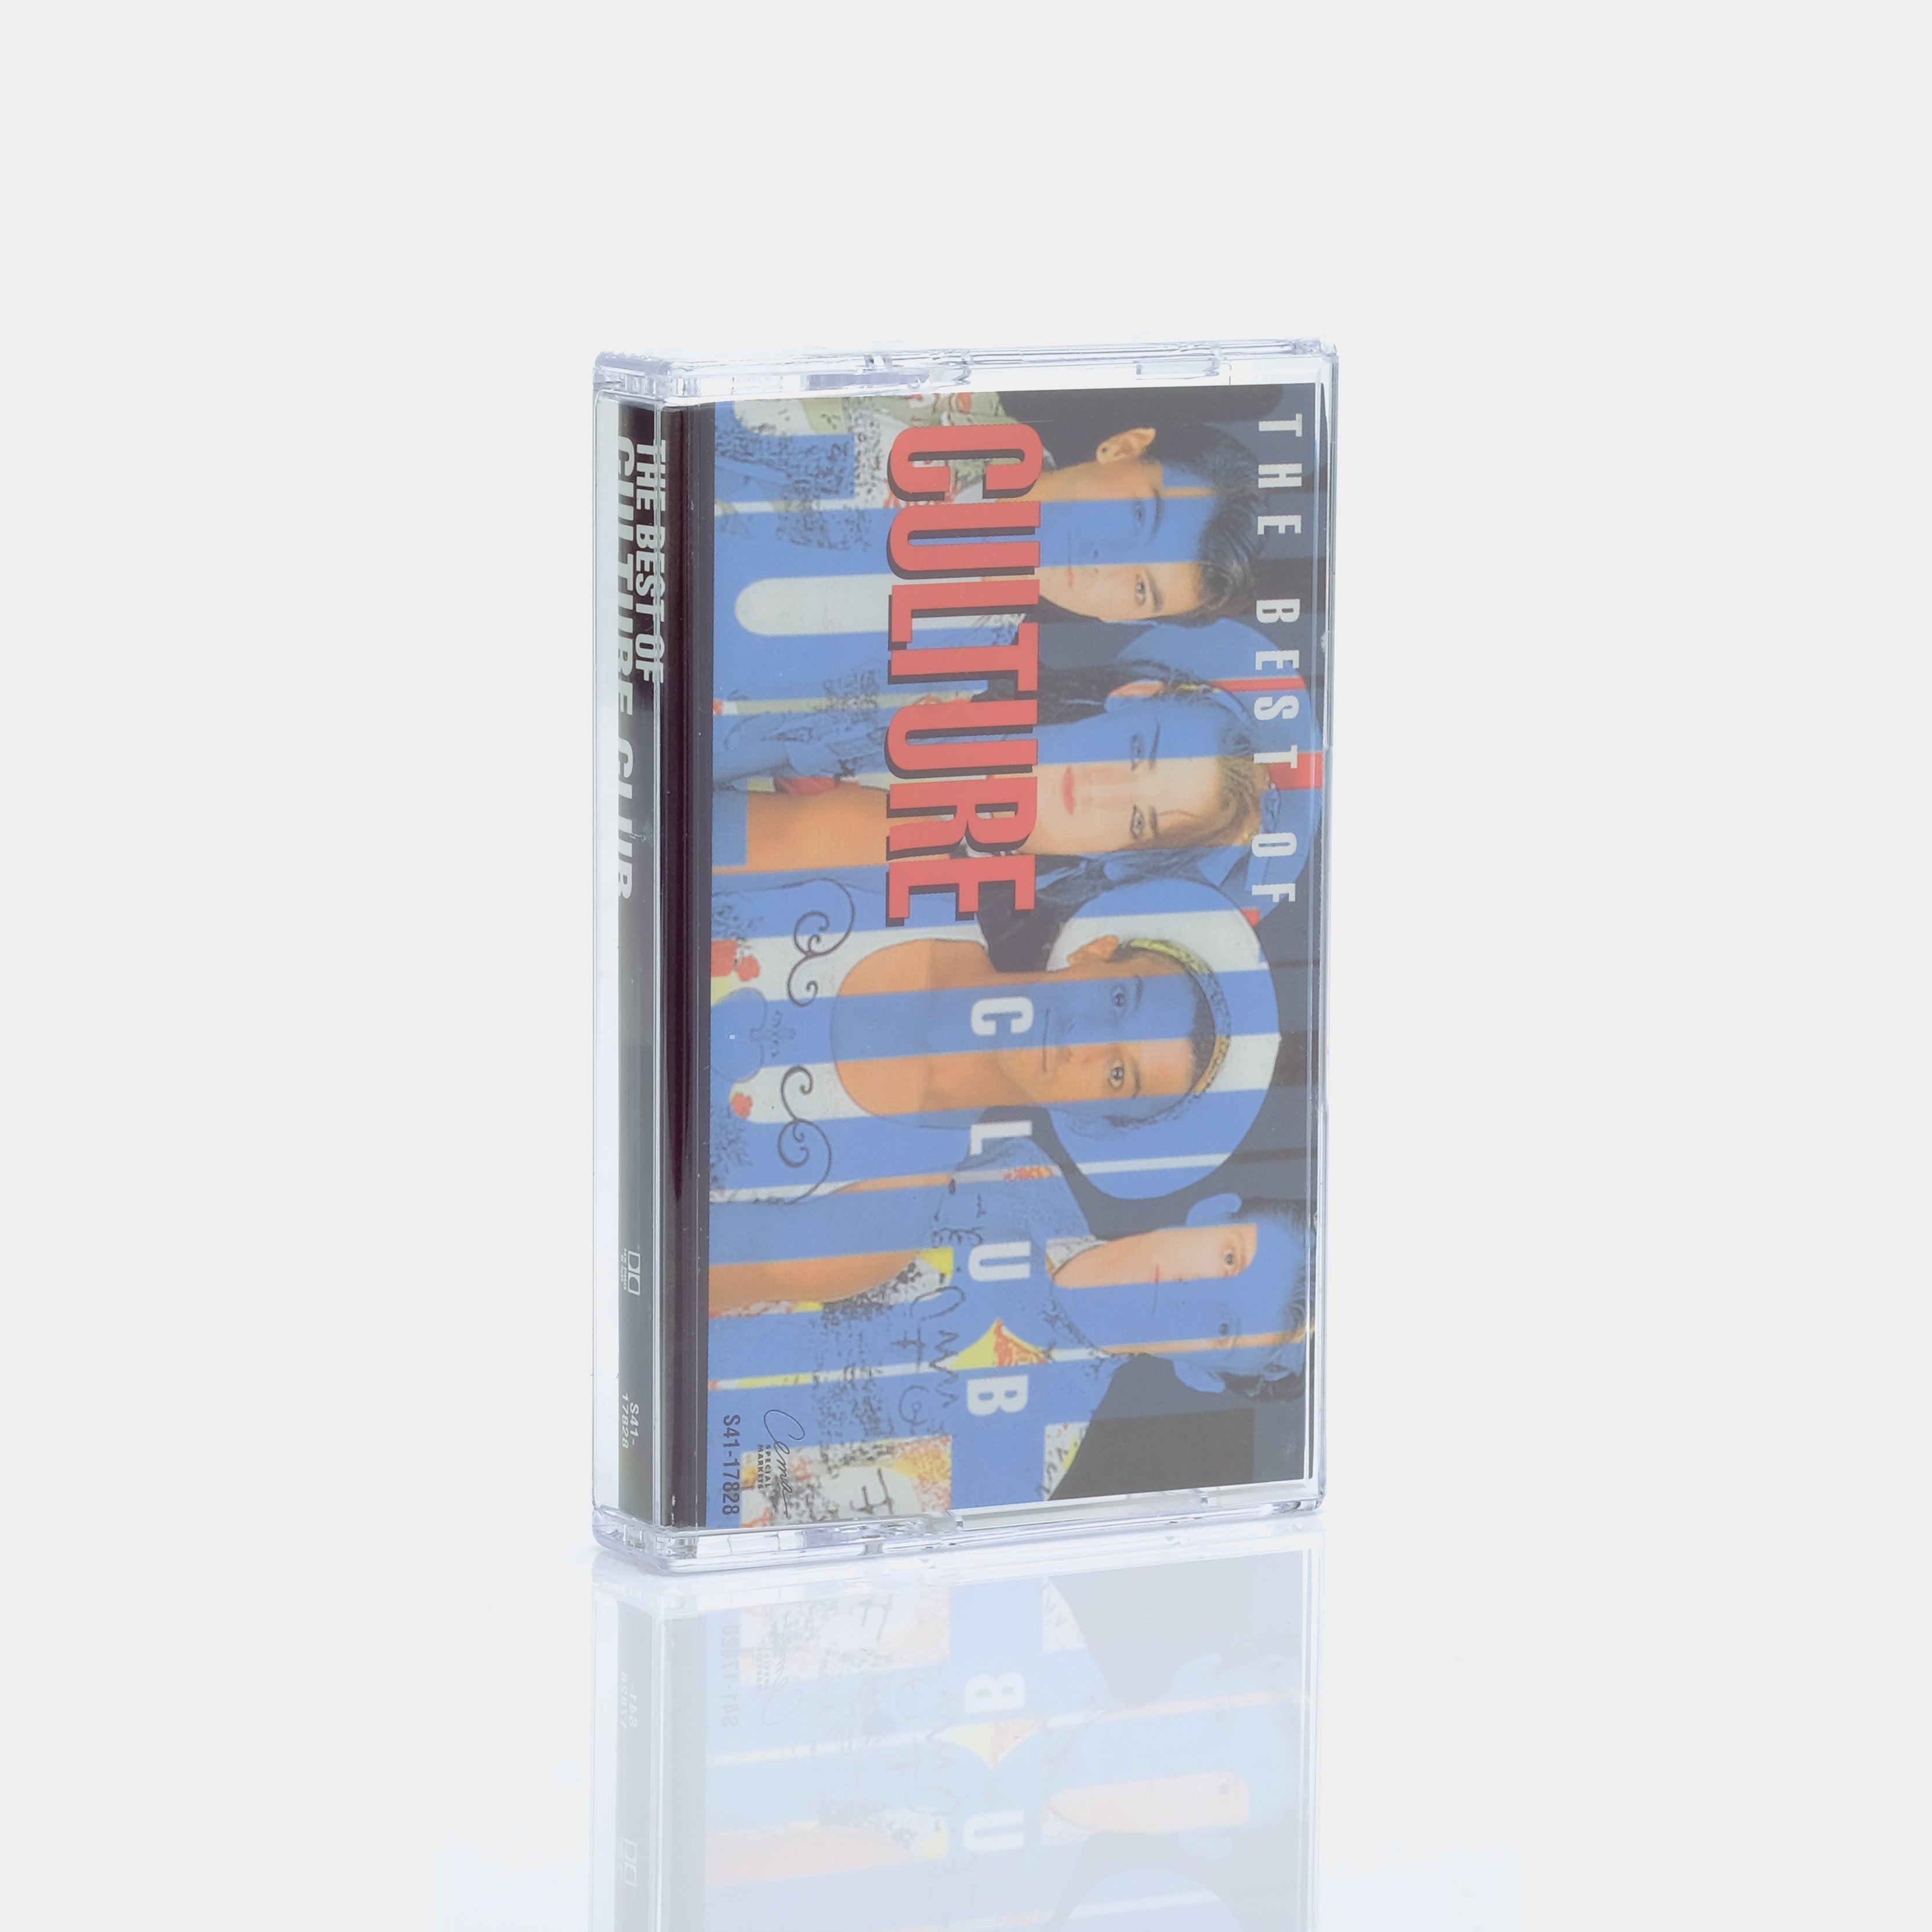 Culture Club - The Best Of Culture Club Cassette Tape